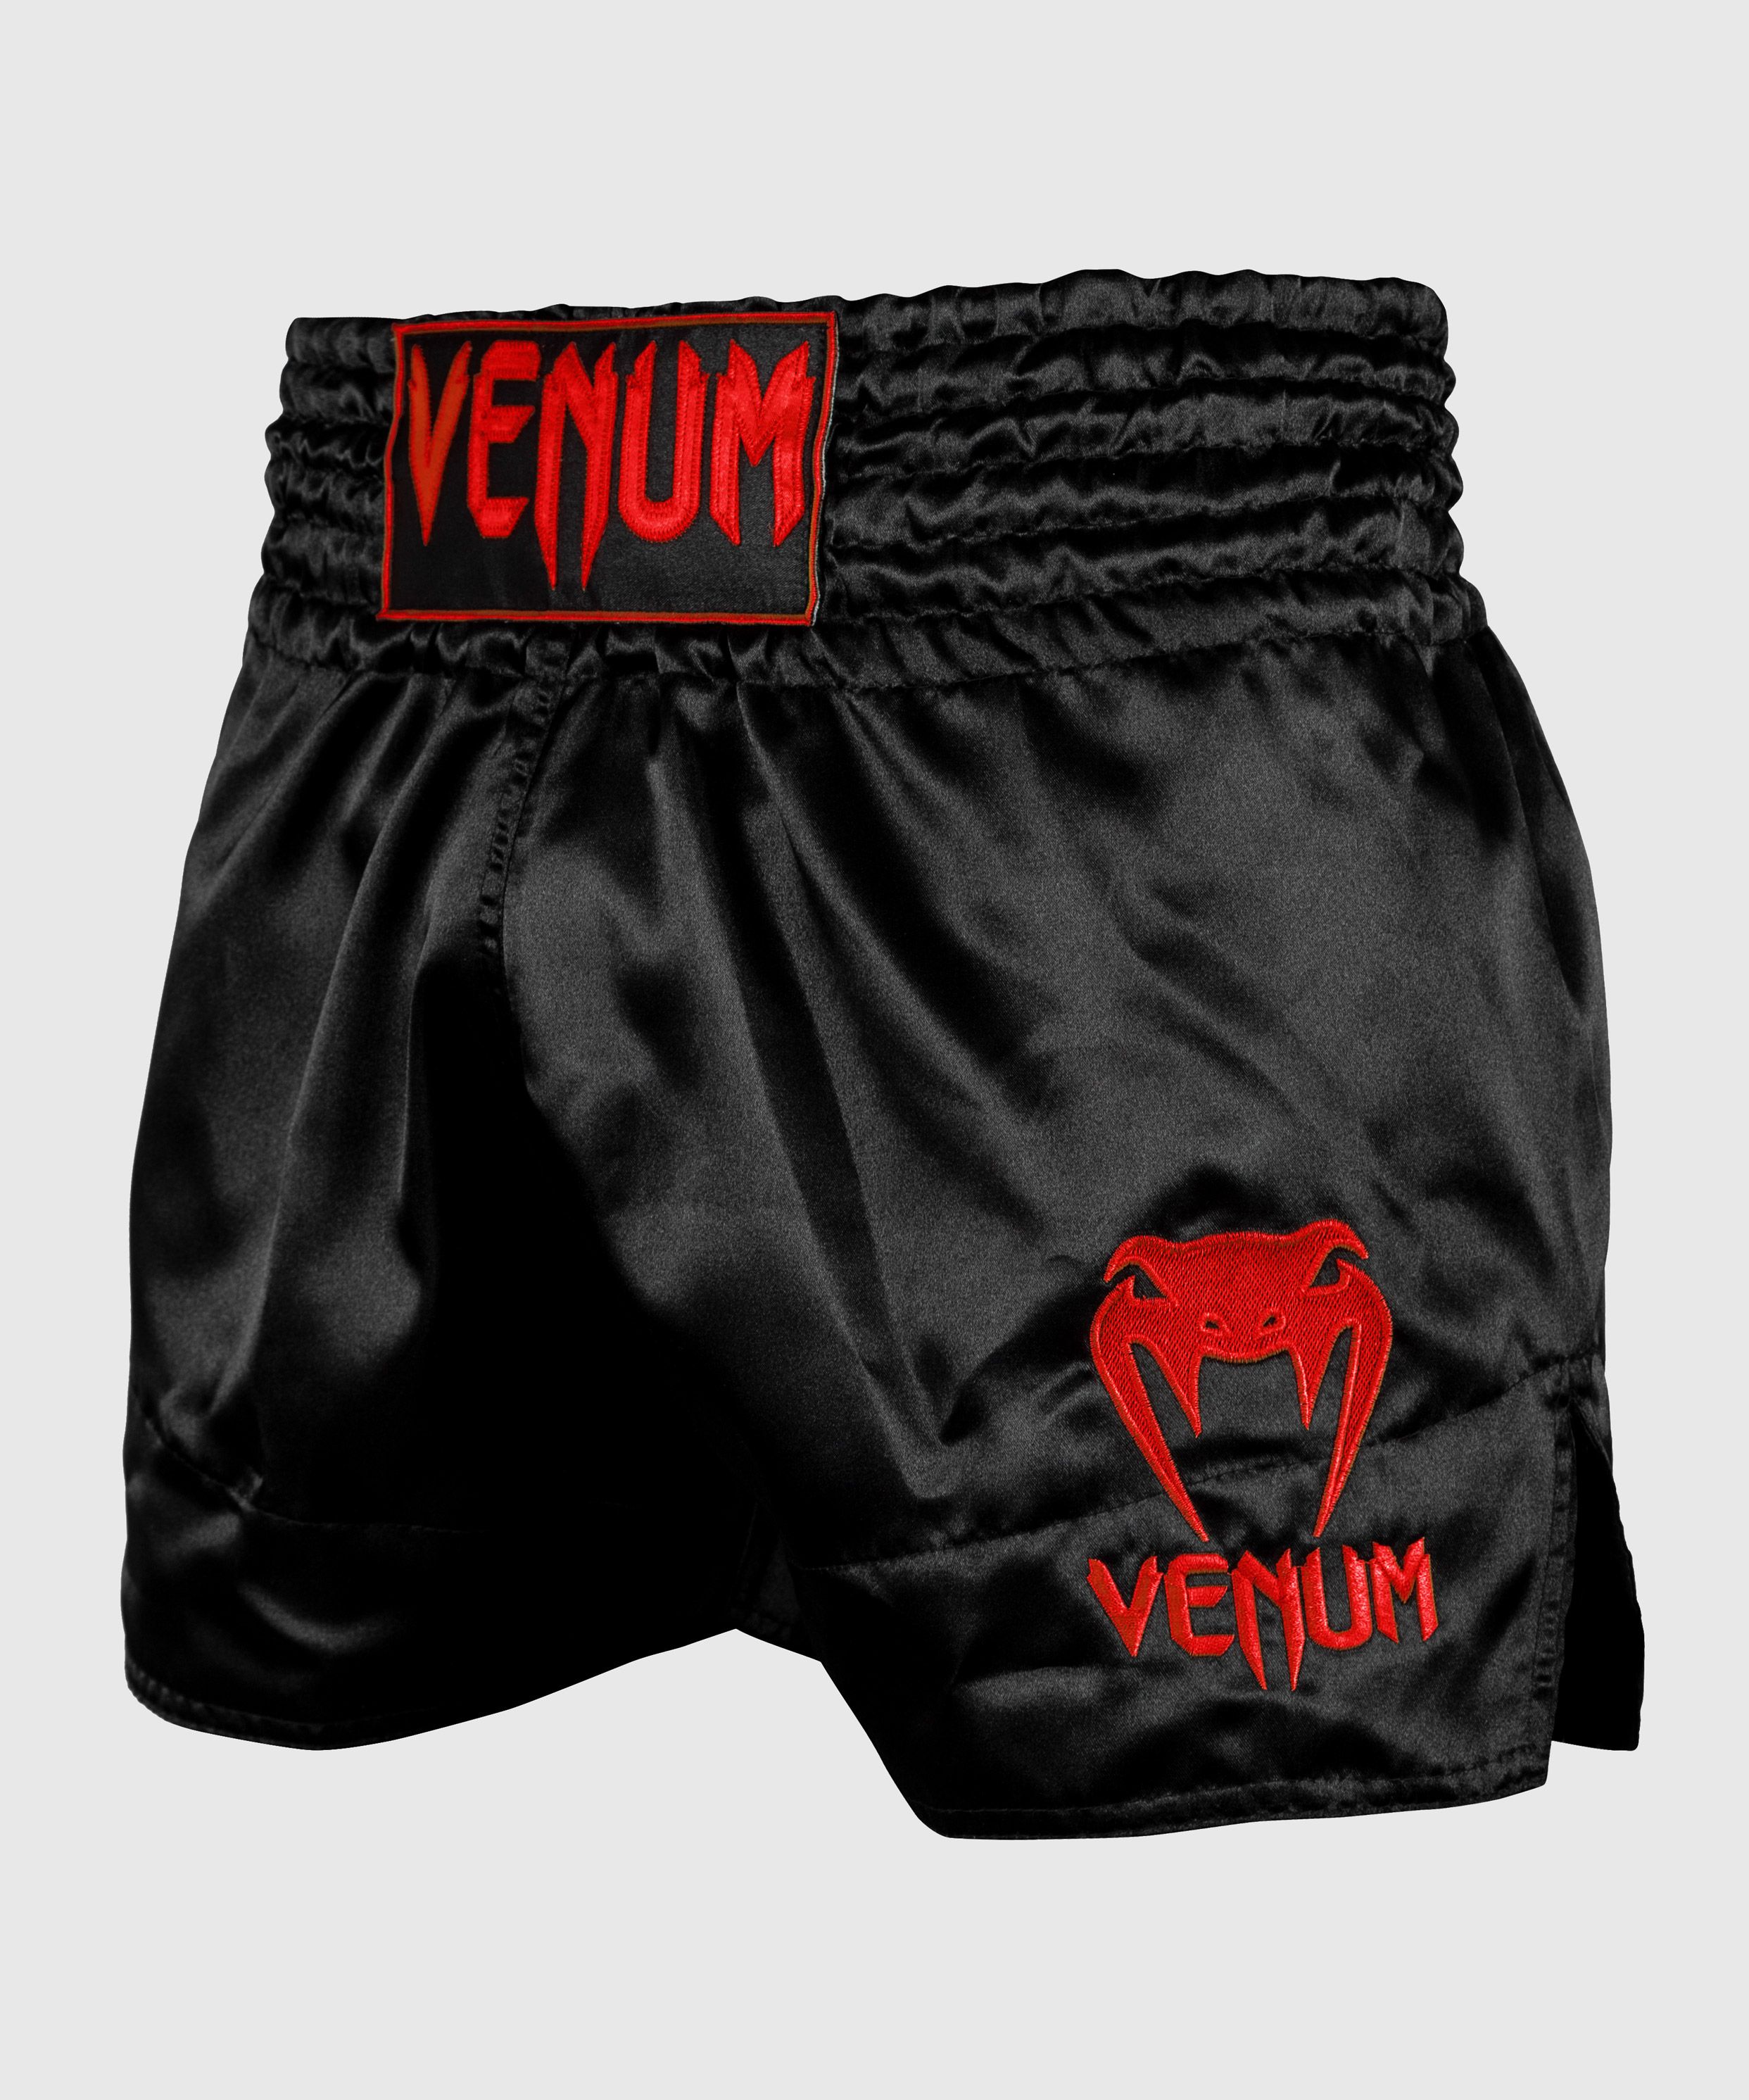 Pantaloncini Muay Thai Classic Venum - Nero/Rosso